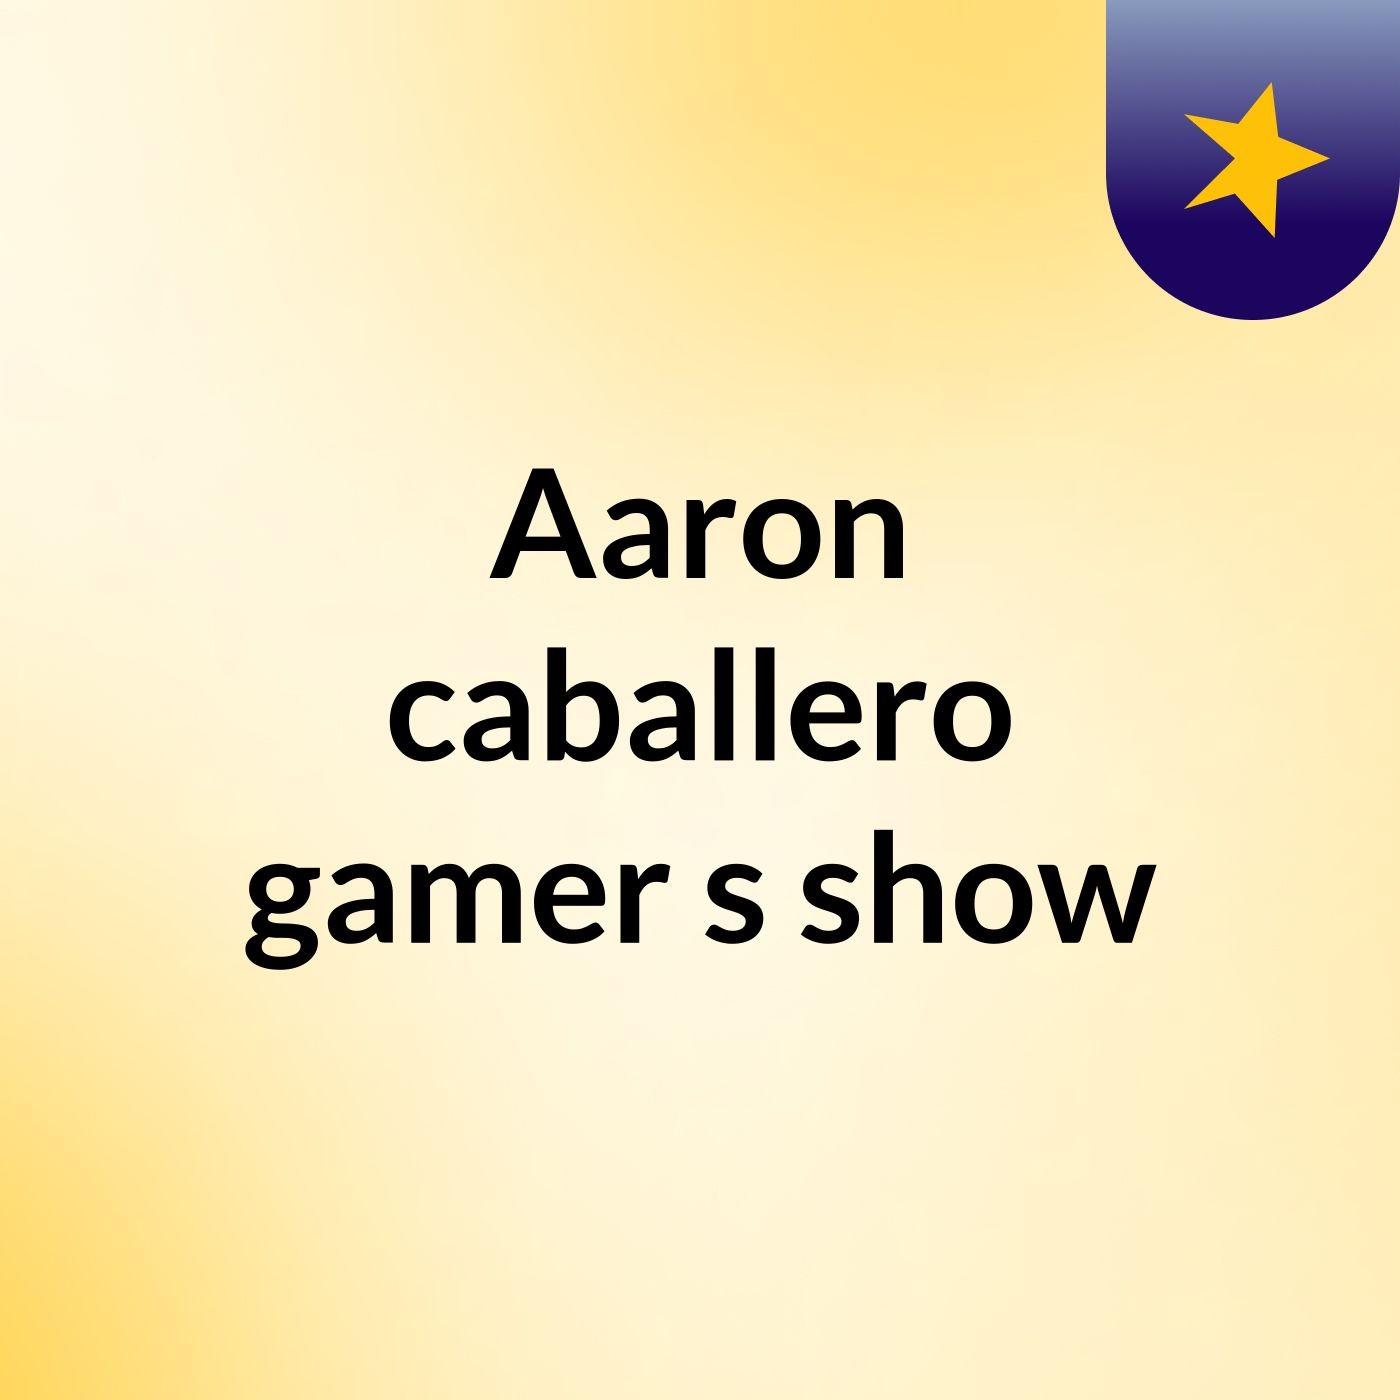 Aaron caballero gamer's show